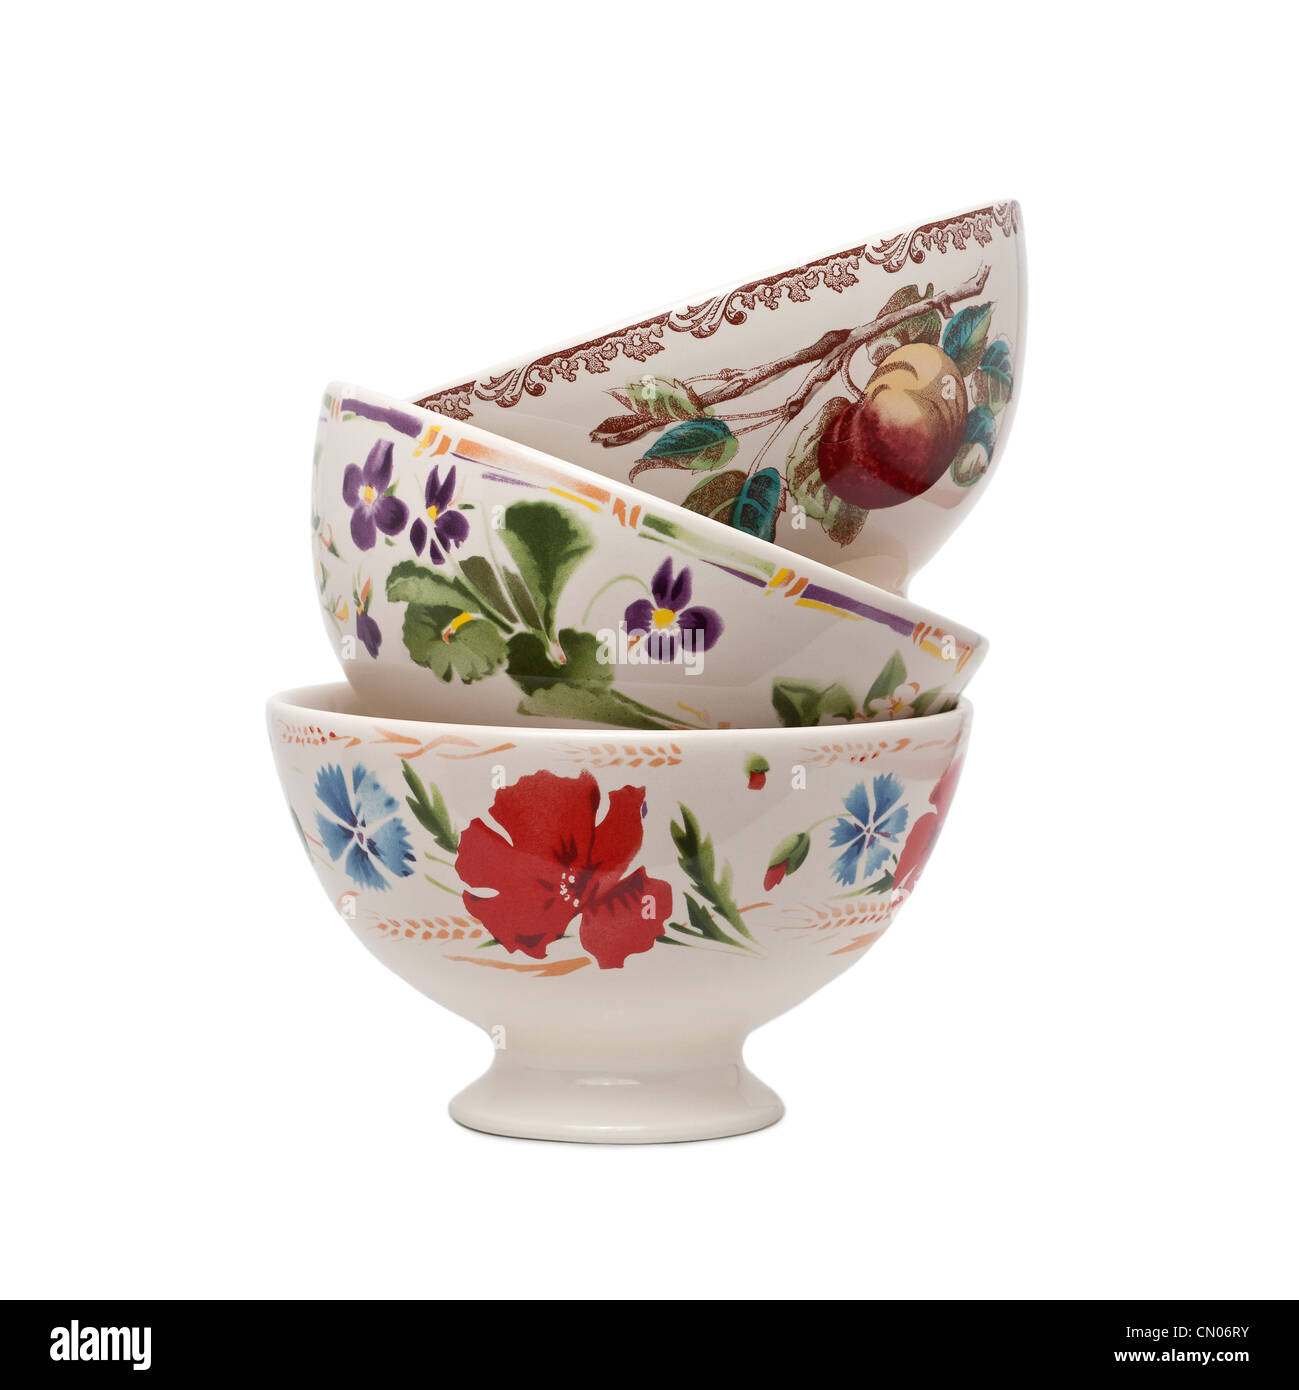 Glazed earthenware bowls with hand-applied patterns. Bols en faïence émaillée avec motifs appliqués à la main. Stock Photo